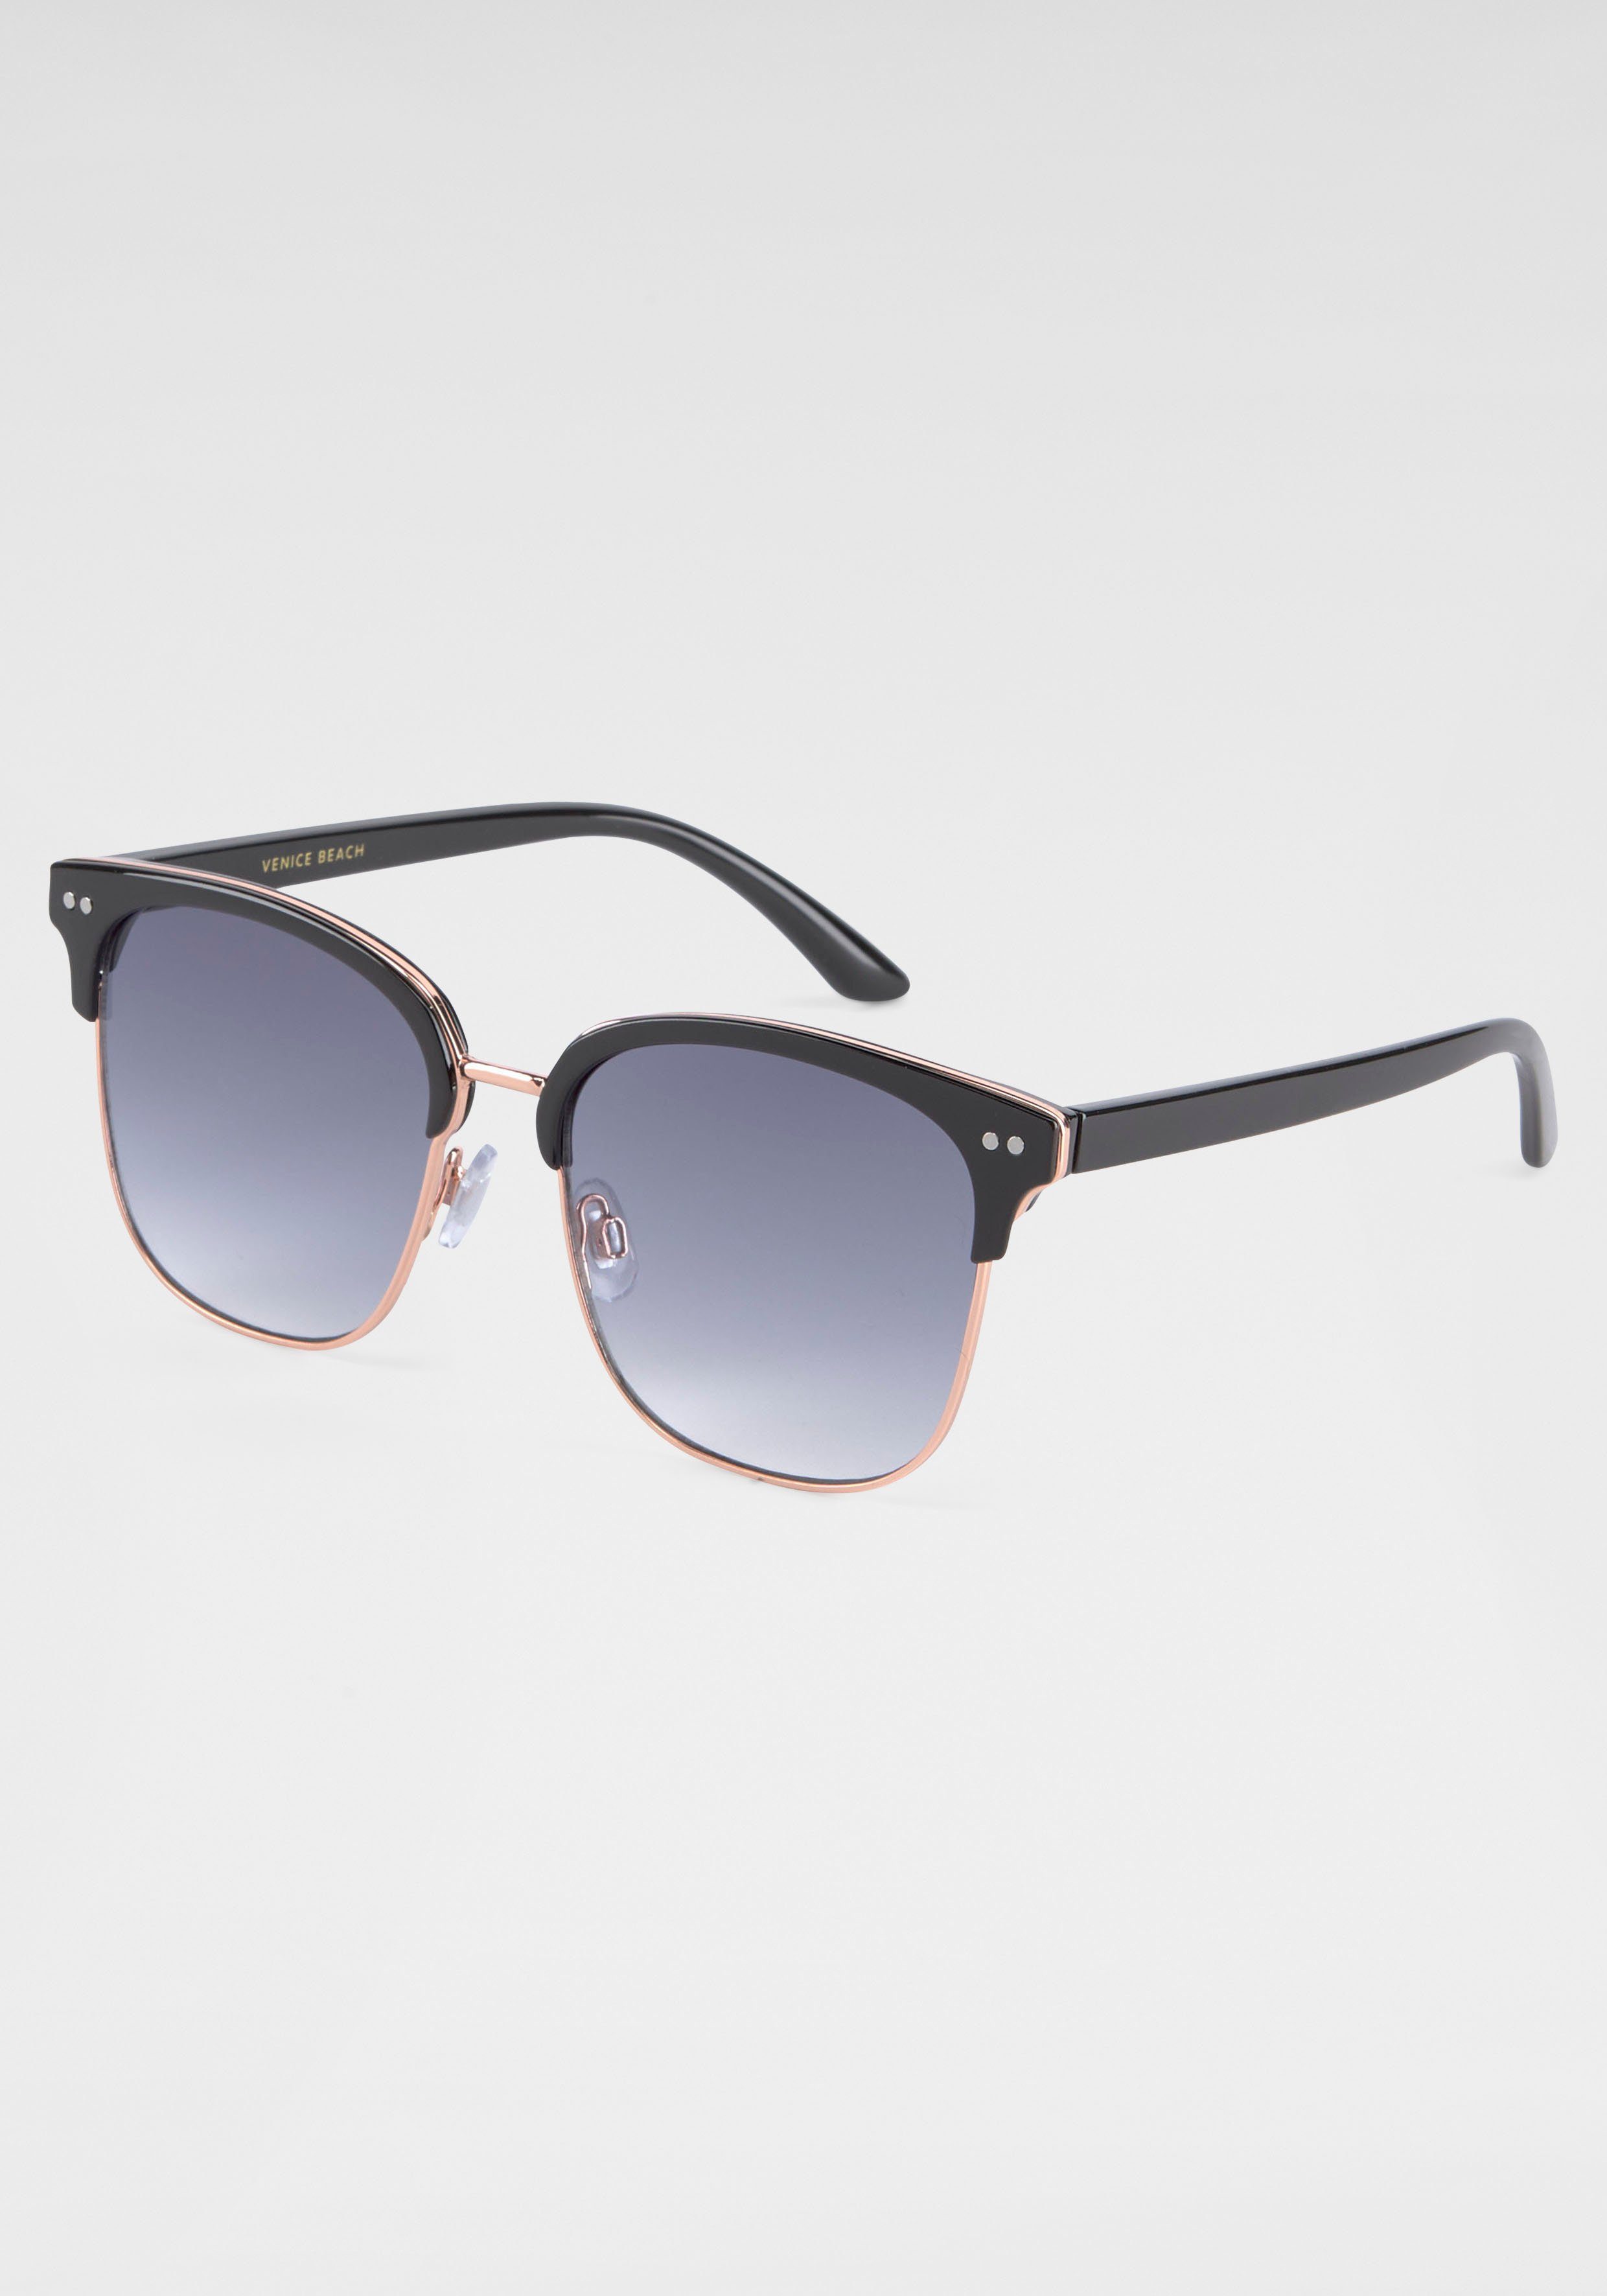 BLACK schwarz Gläsern BACK gebogenen Sonnenbrille IN mit Eyewear